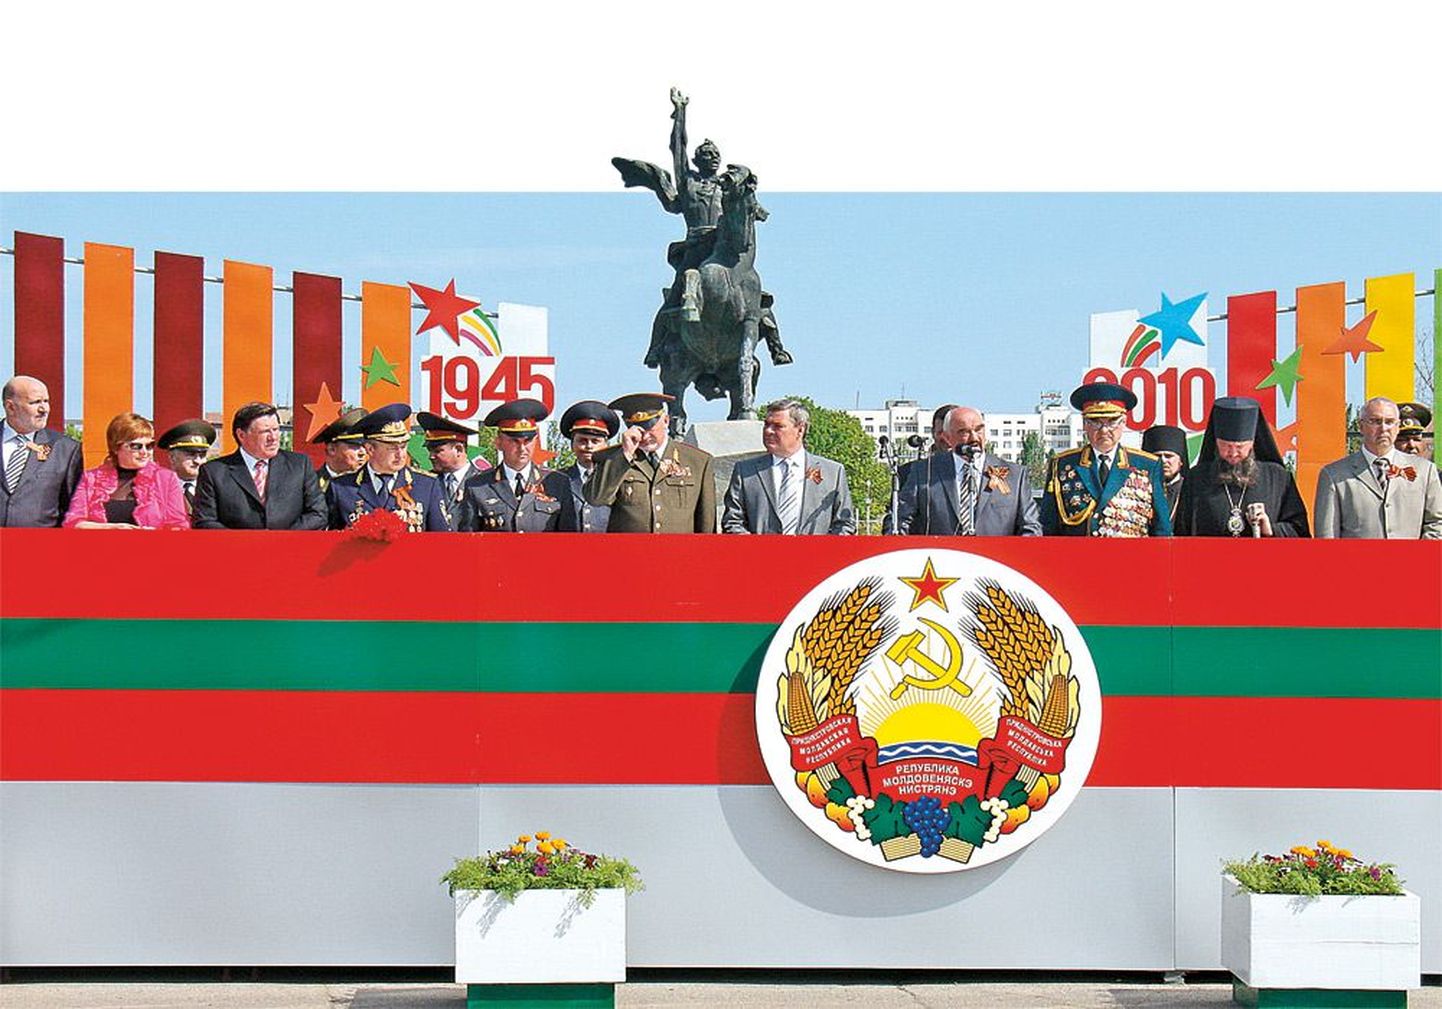 2010 год. Руководители Приднестровской Молдавской Республики отмечают 65-ю годовщину окончания Великой Отечественной войны и 20-ю годовщину республики.